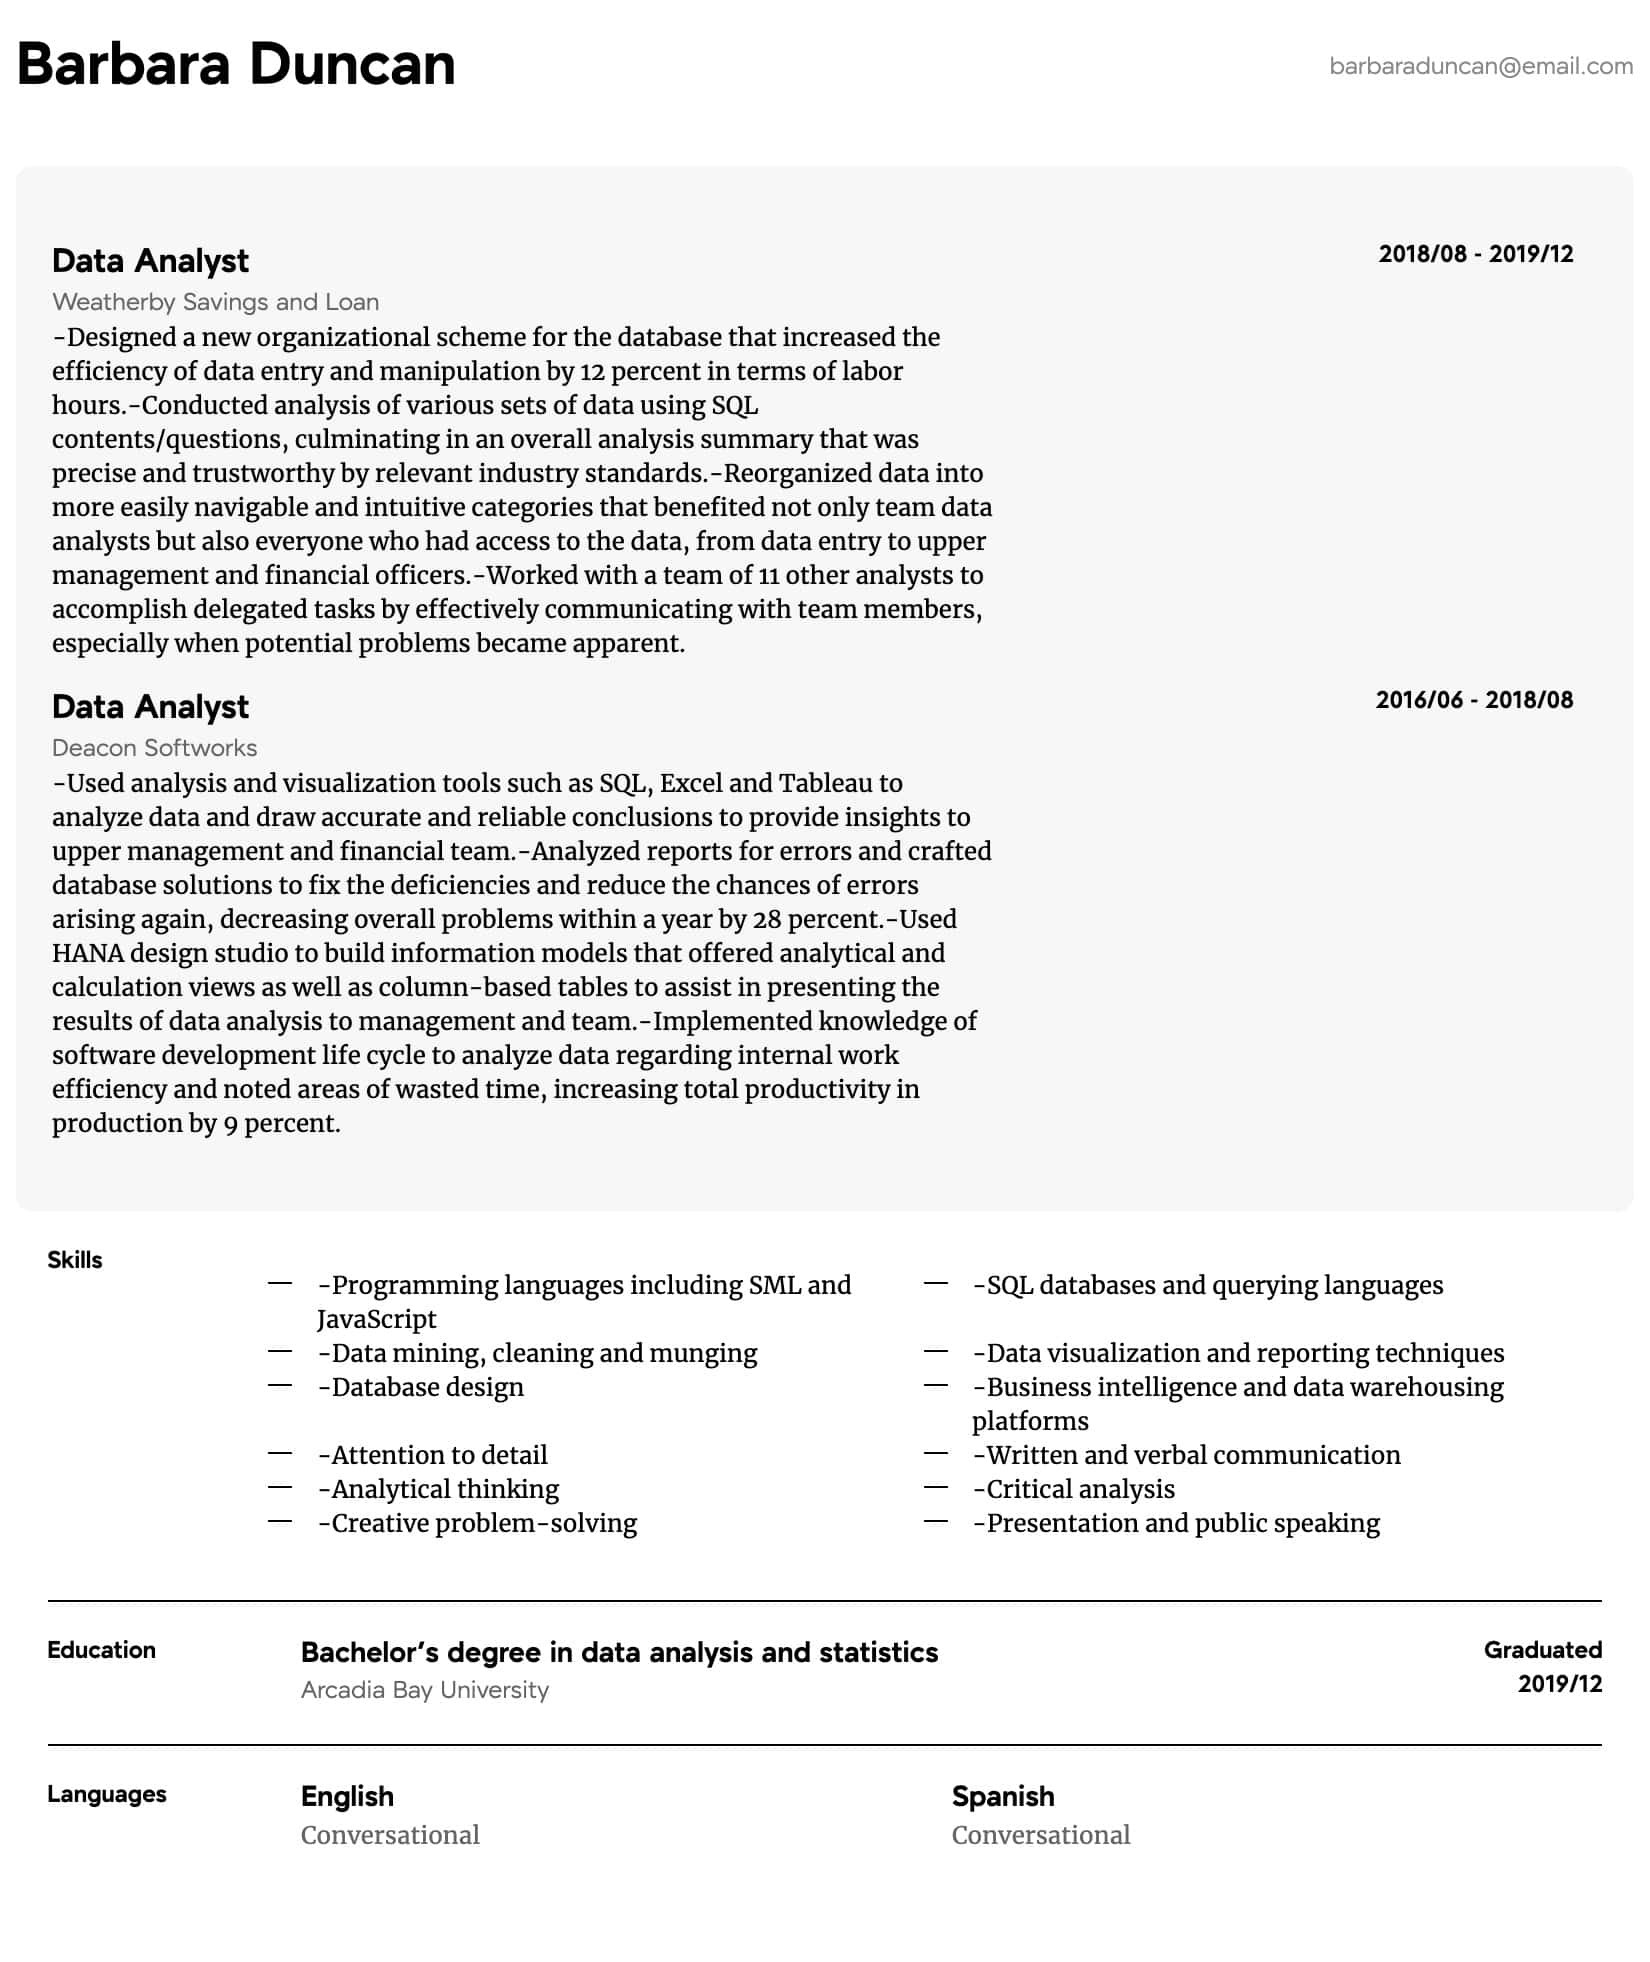 Data Analyst Resume Entry Level Sample Data Analyst Resume Samples All Experience Levels Resume.com …